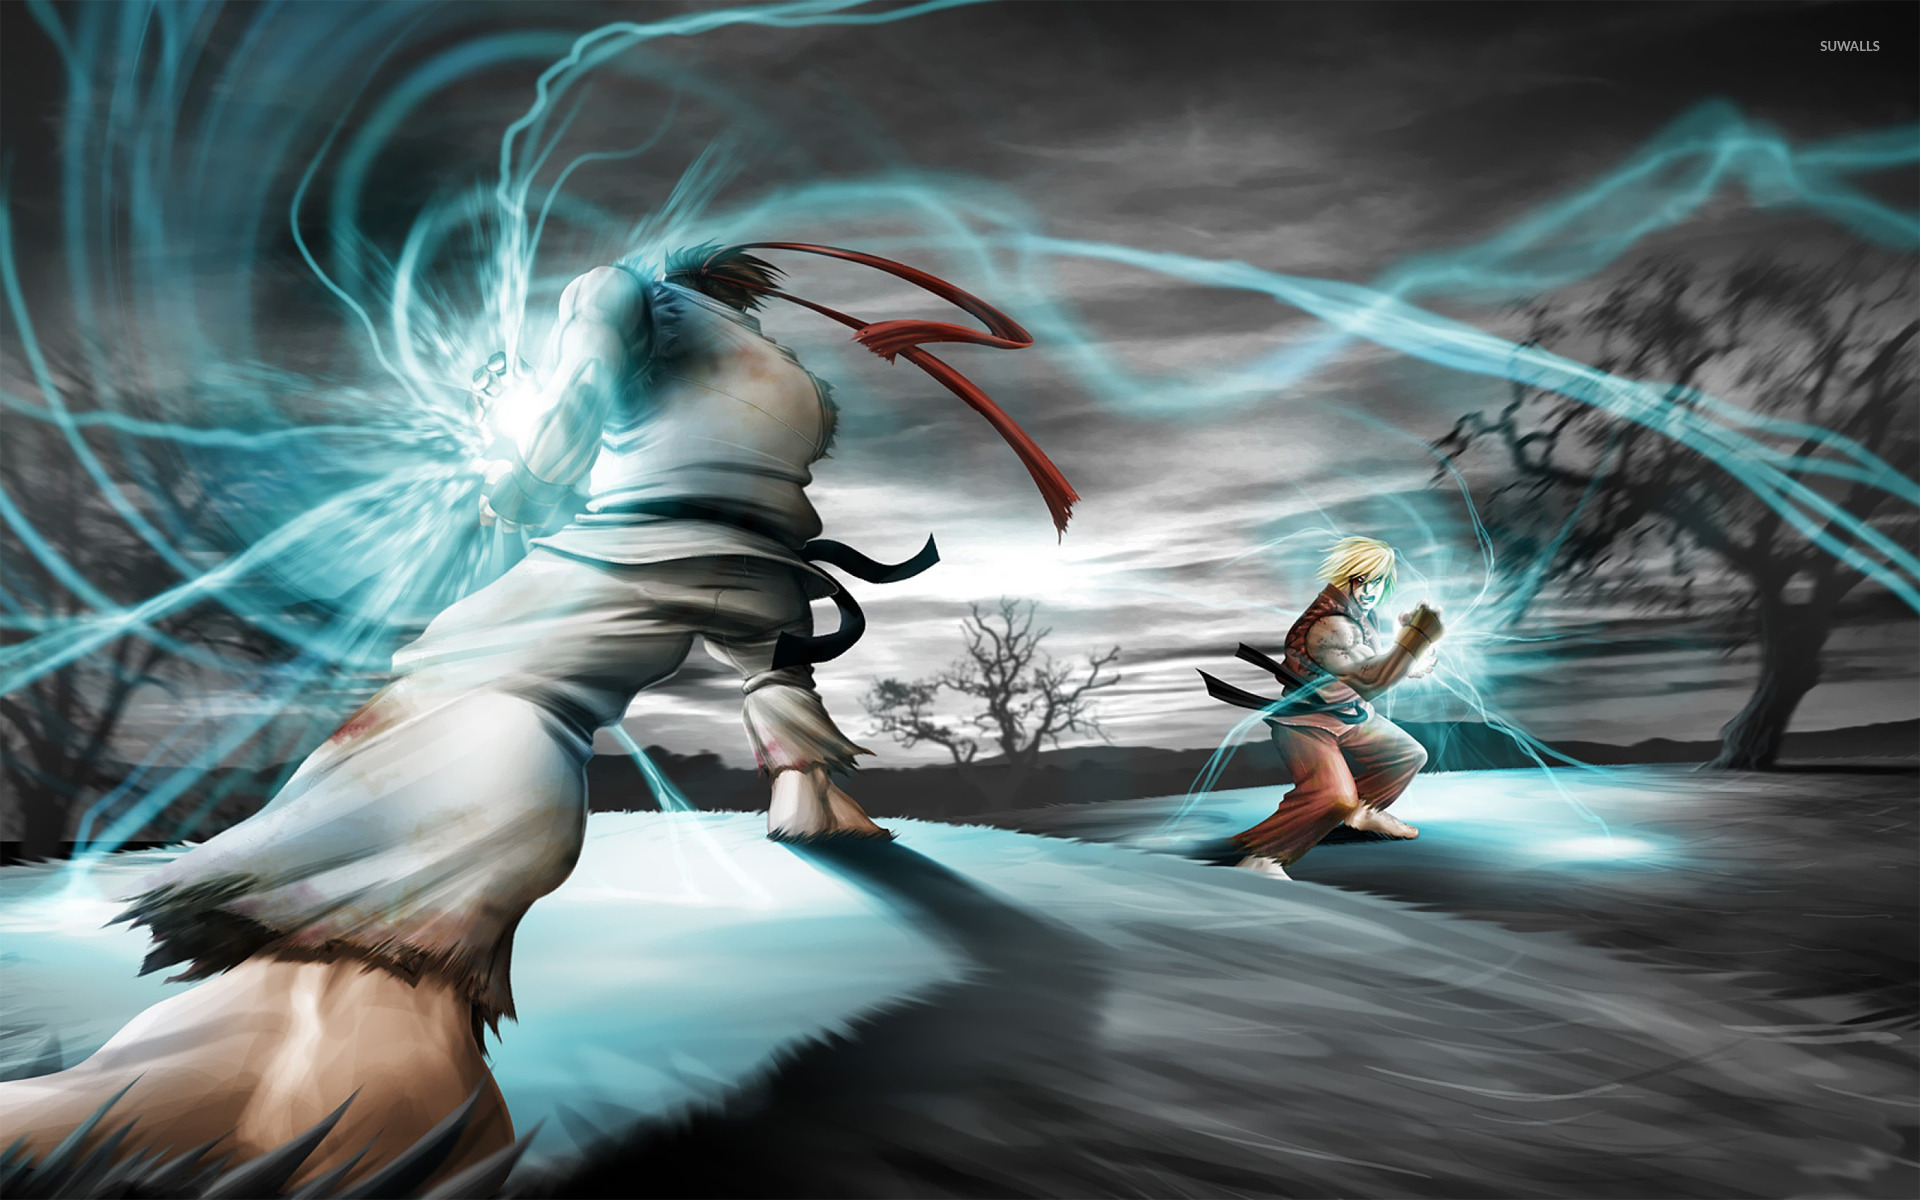 fondo de pantalla de ryu street fighter,cg artwork,ilustración,personaje de ficción,mitología,juegos